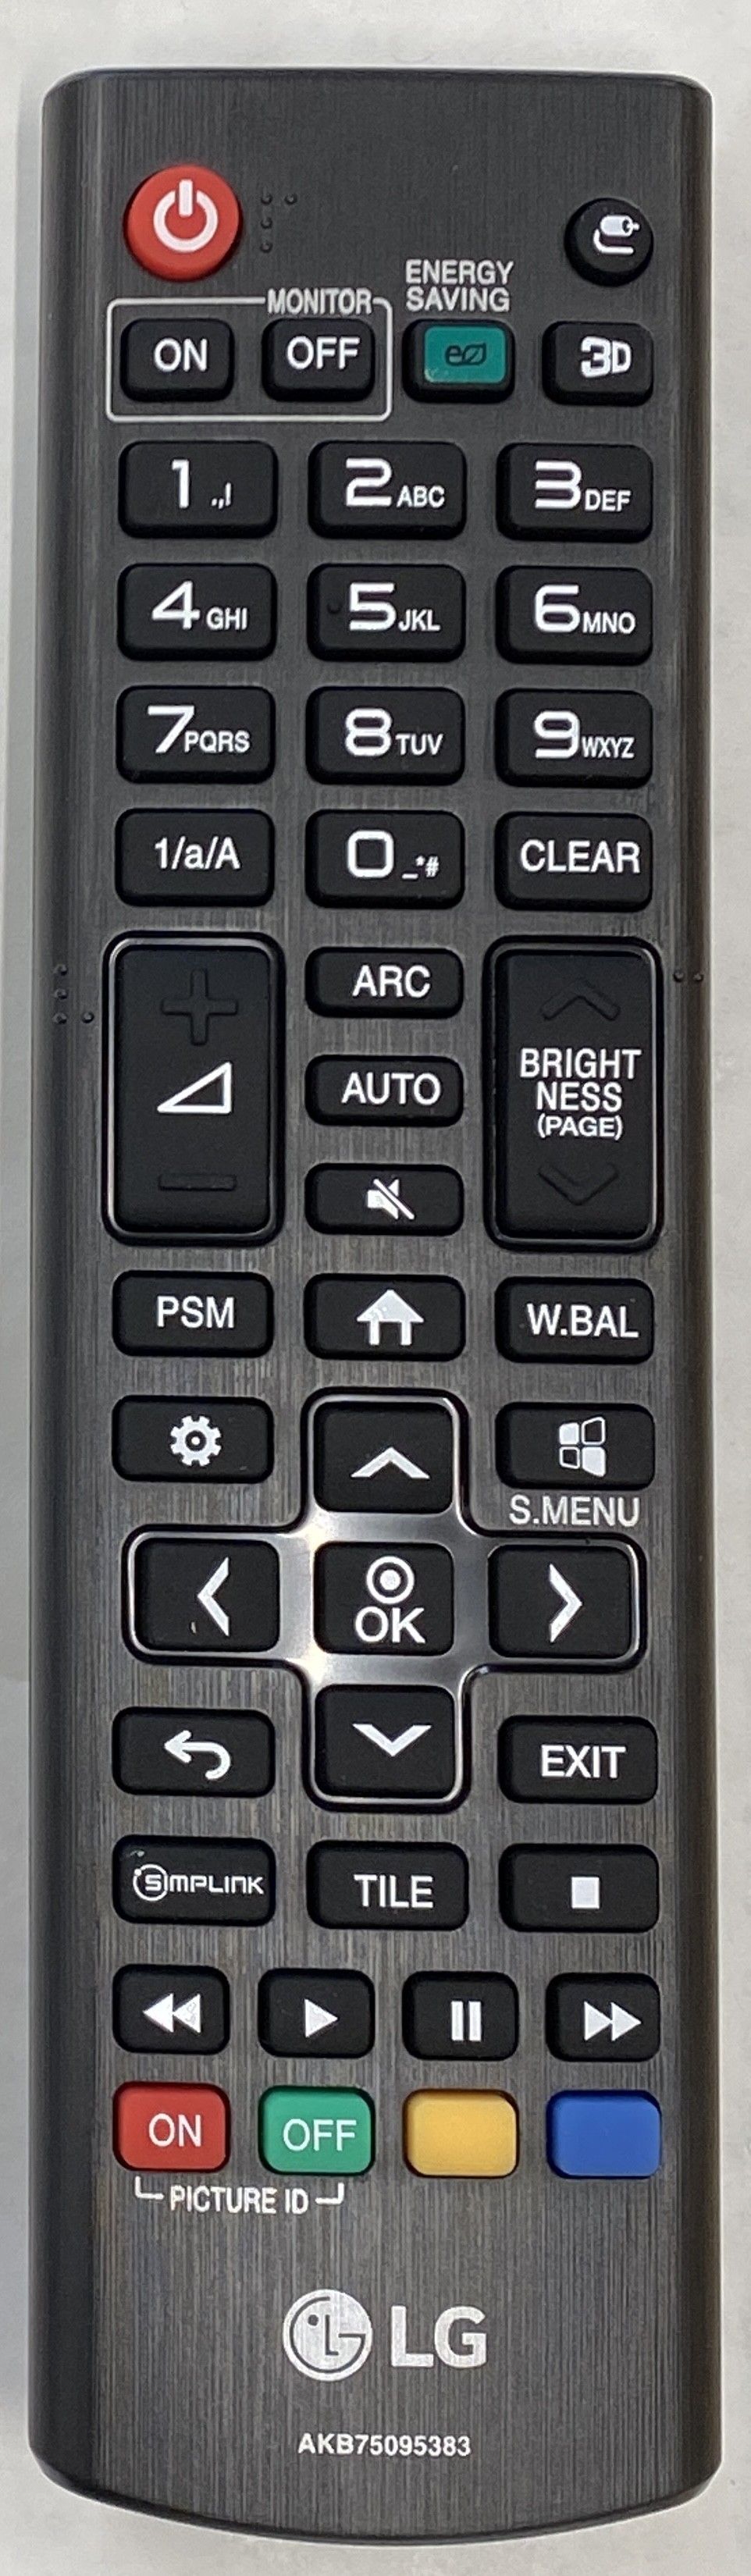 LG 98UM3EB Remote Control Original